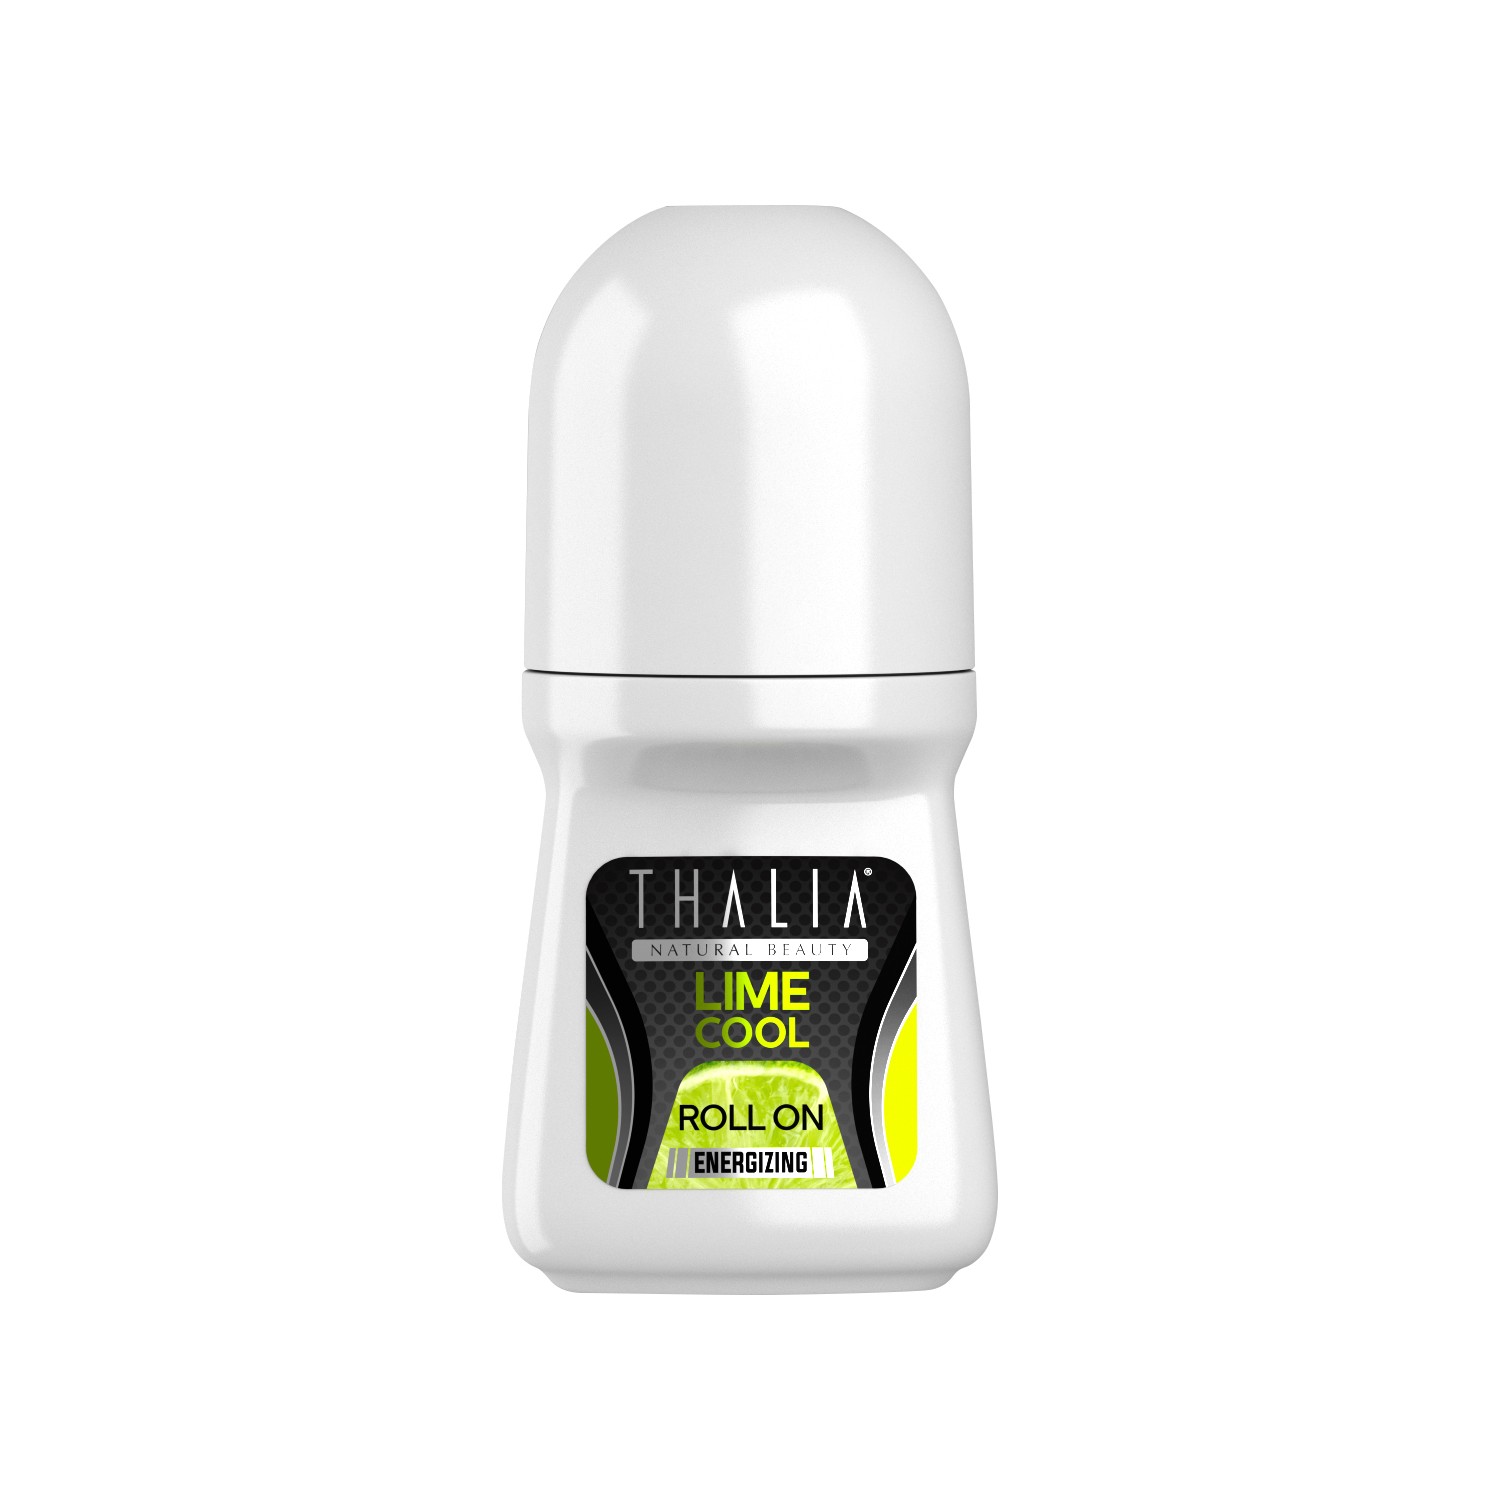 цена Роликовый лосьон Thalia Lime & Cool Energizing, 50 мл